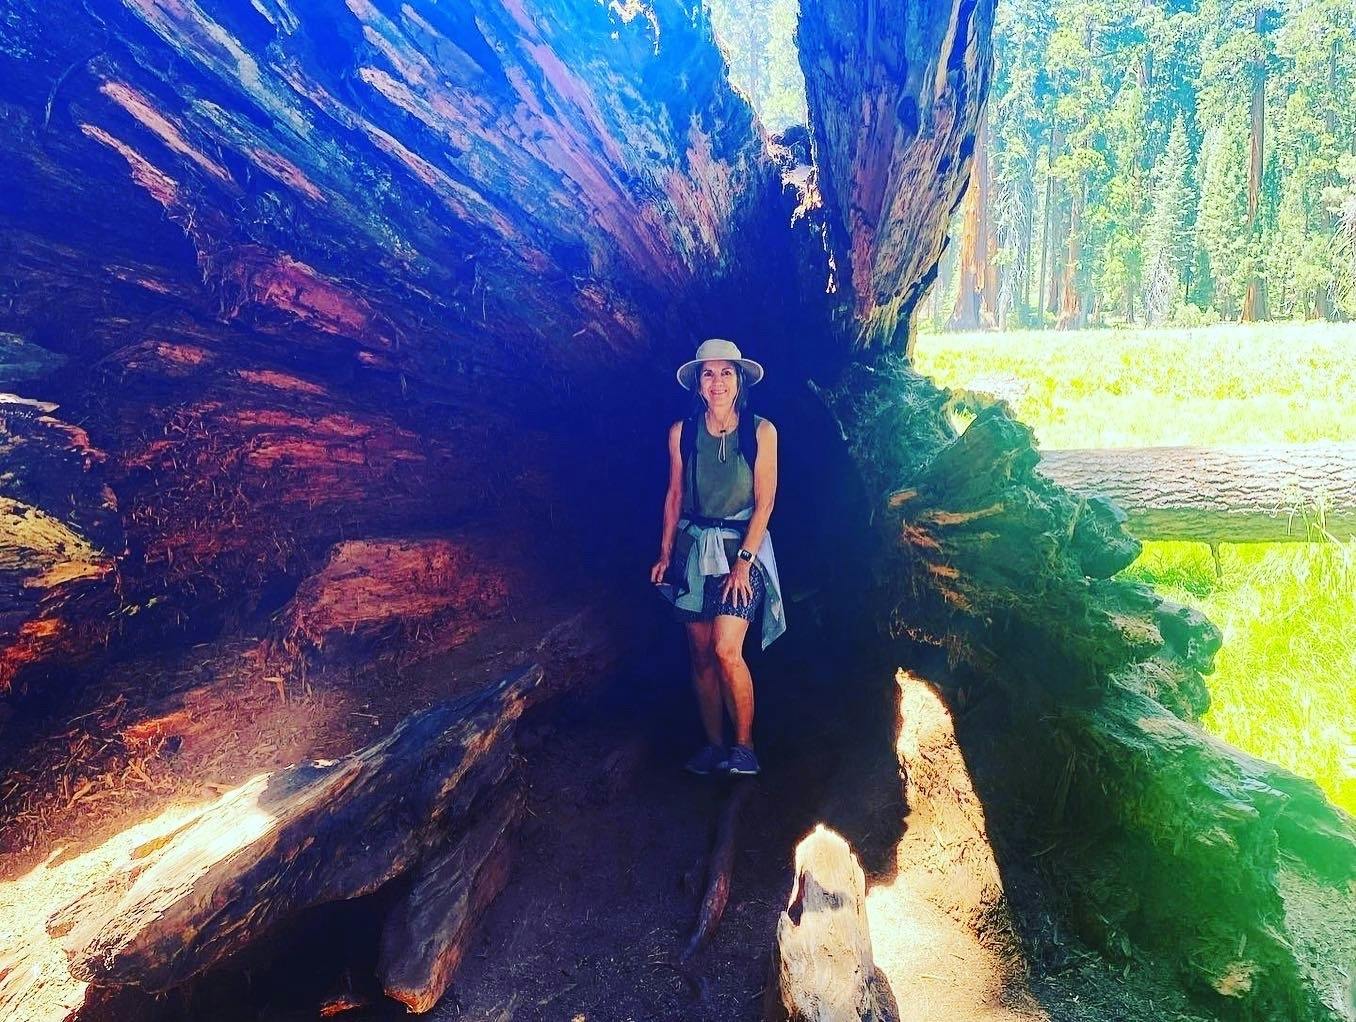 Excursão ao Parque Nacional das Sequoias saindo de Fresno